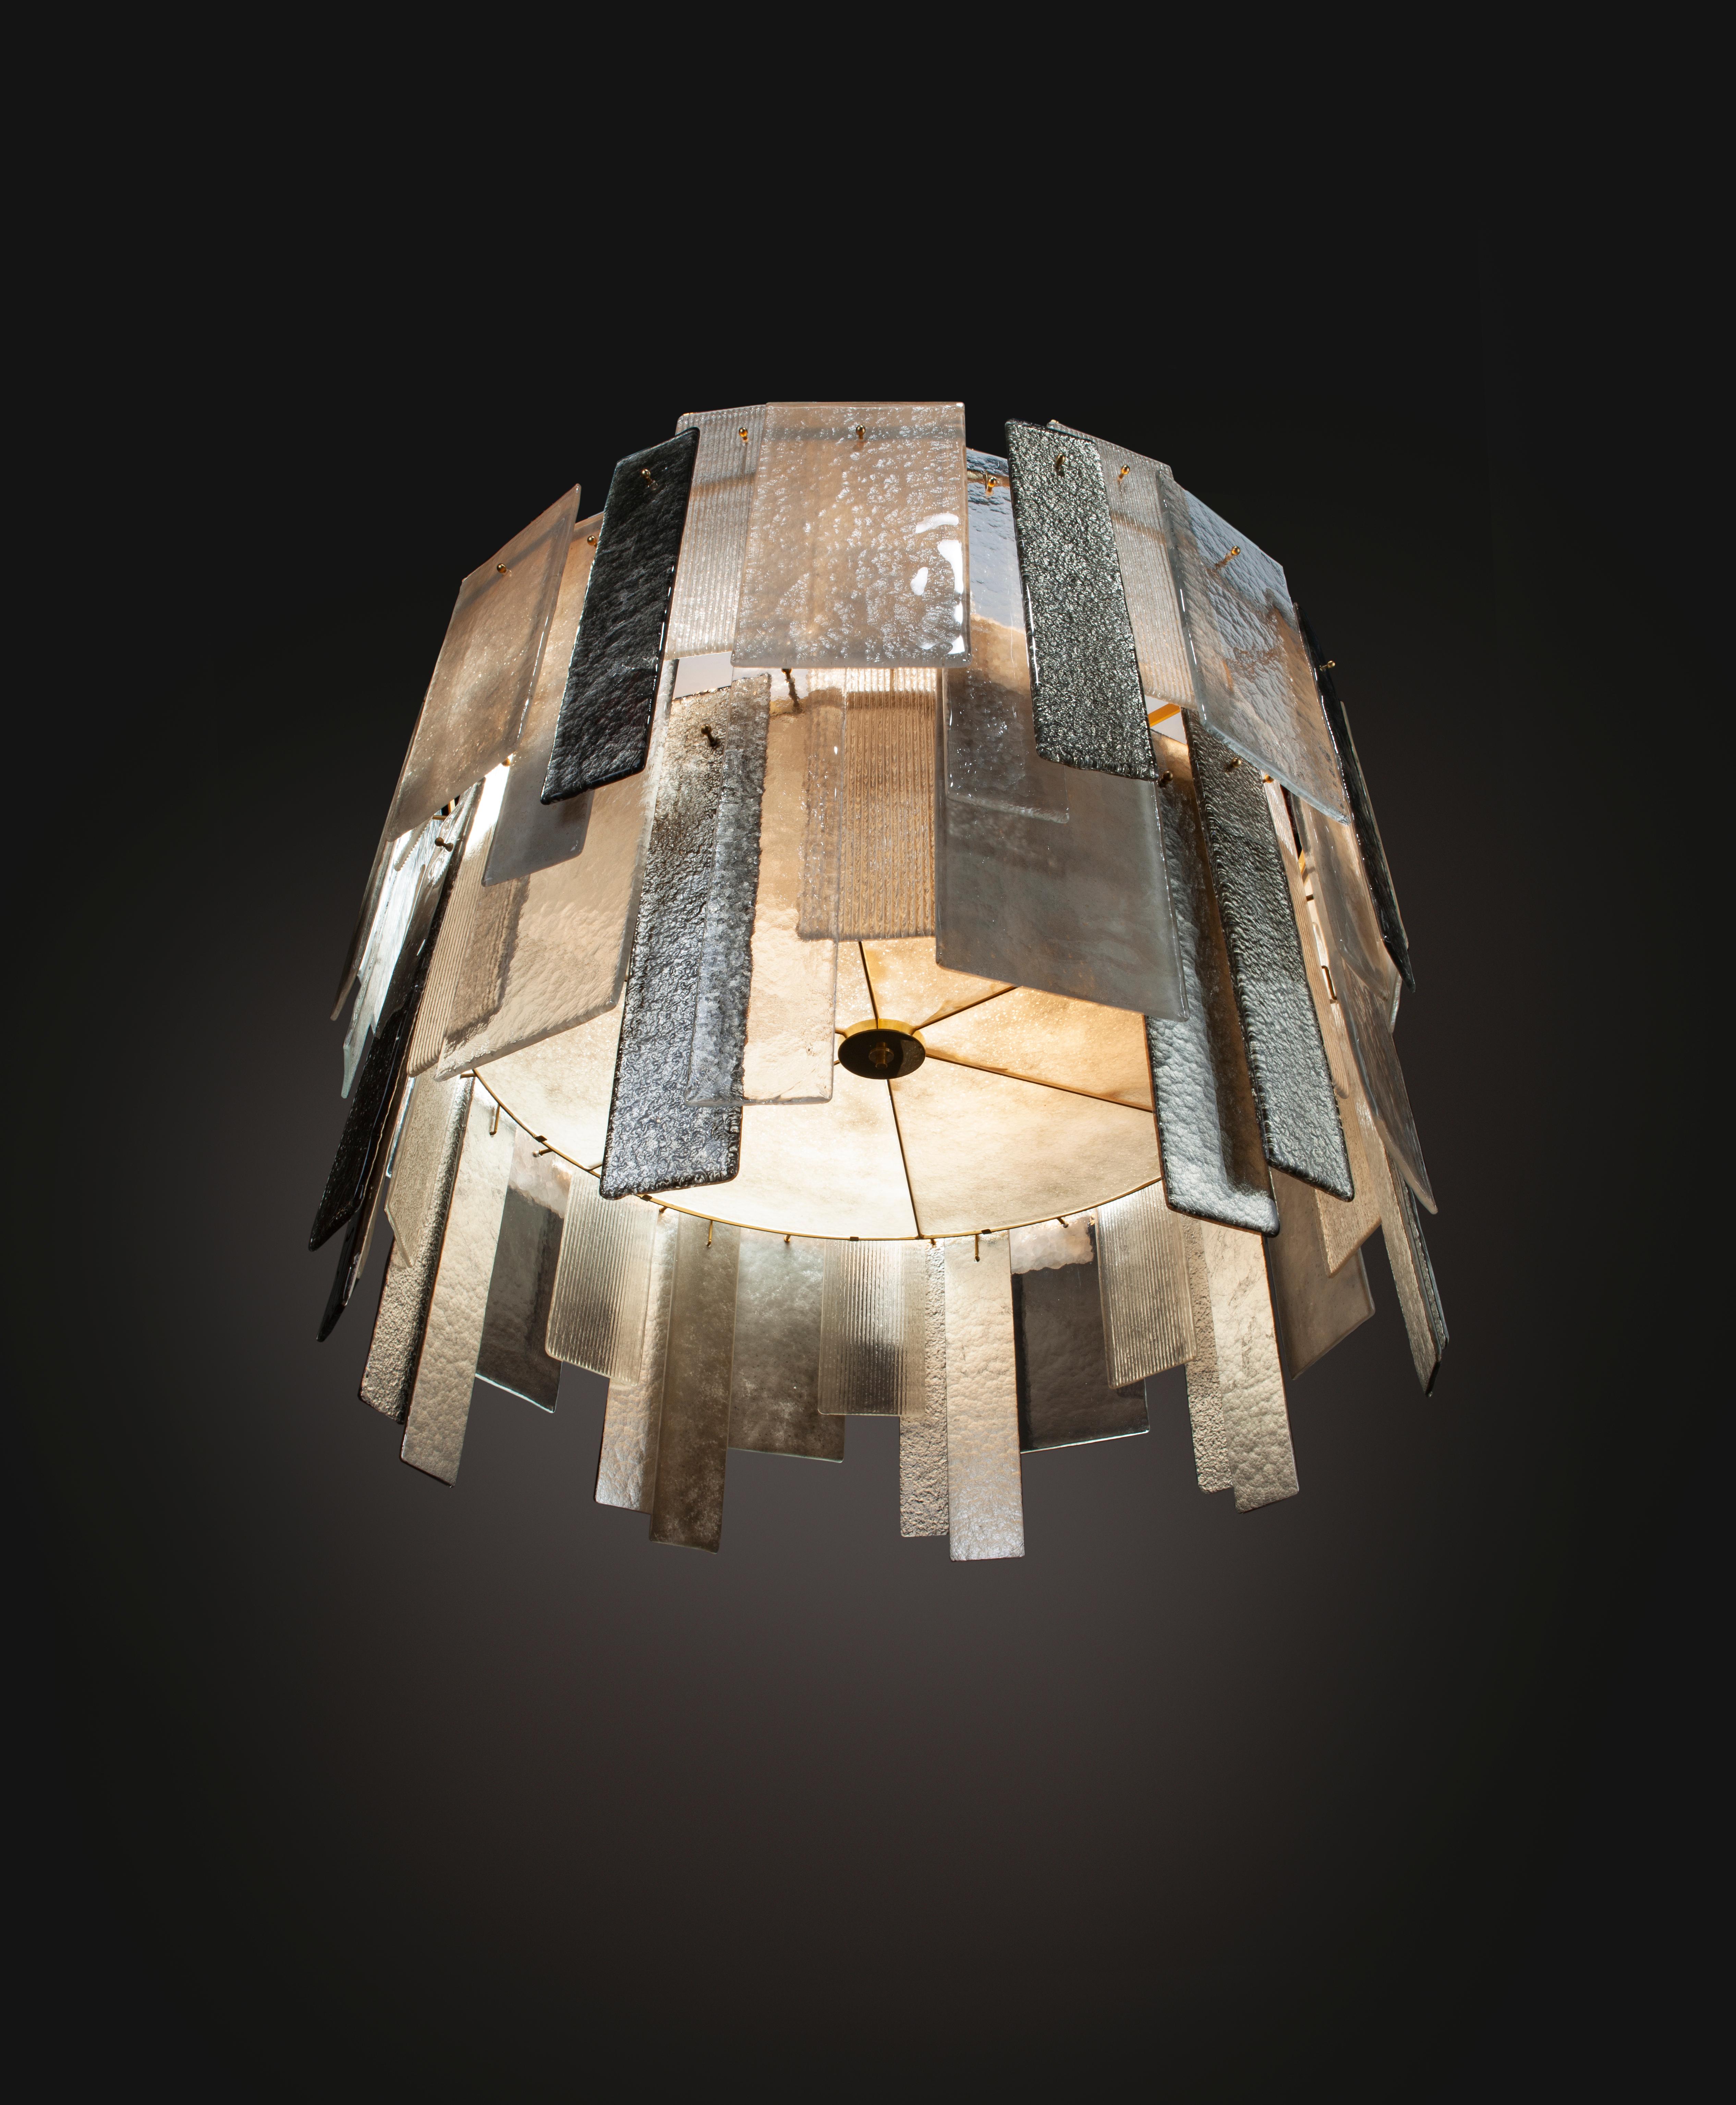 Version de notre populaire lustre Stromboli, le Salina utilise les mêmes panneaux de verre de Murano flottés à la main sur un cadre circulaire revêtu de poudre d'or. La hauteur est réduite par rapport au Stromboli, ce qui le rend plus adapté aux